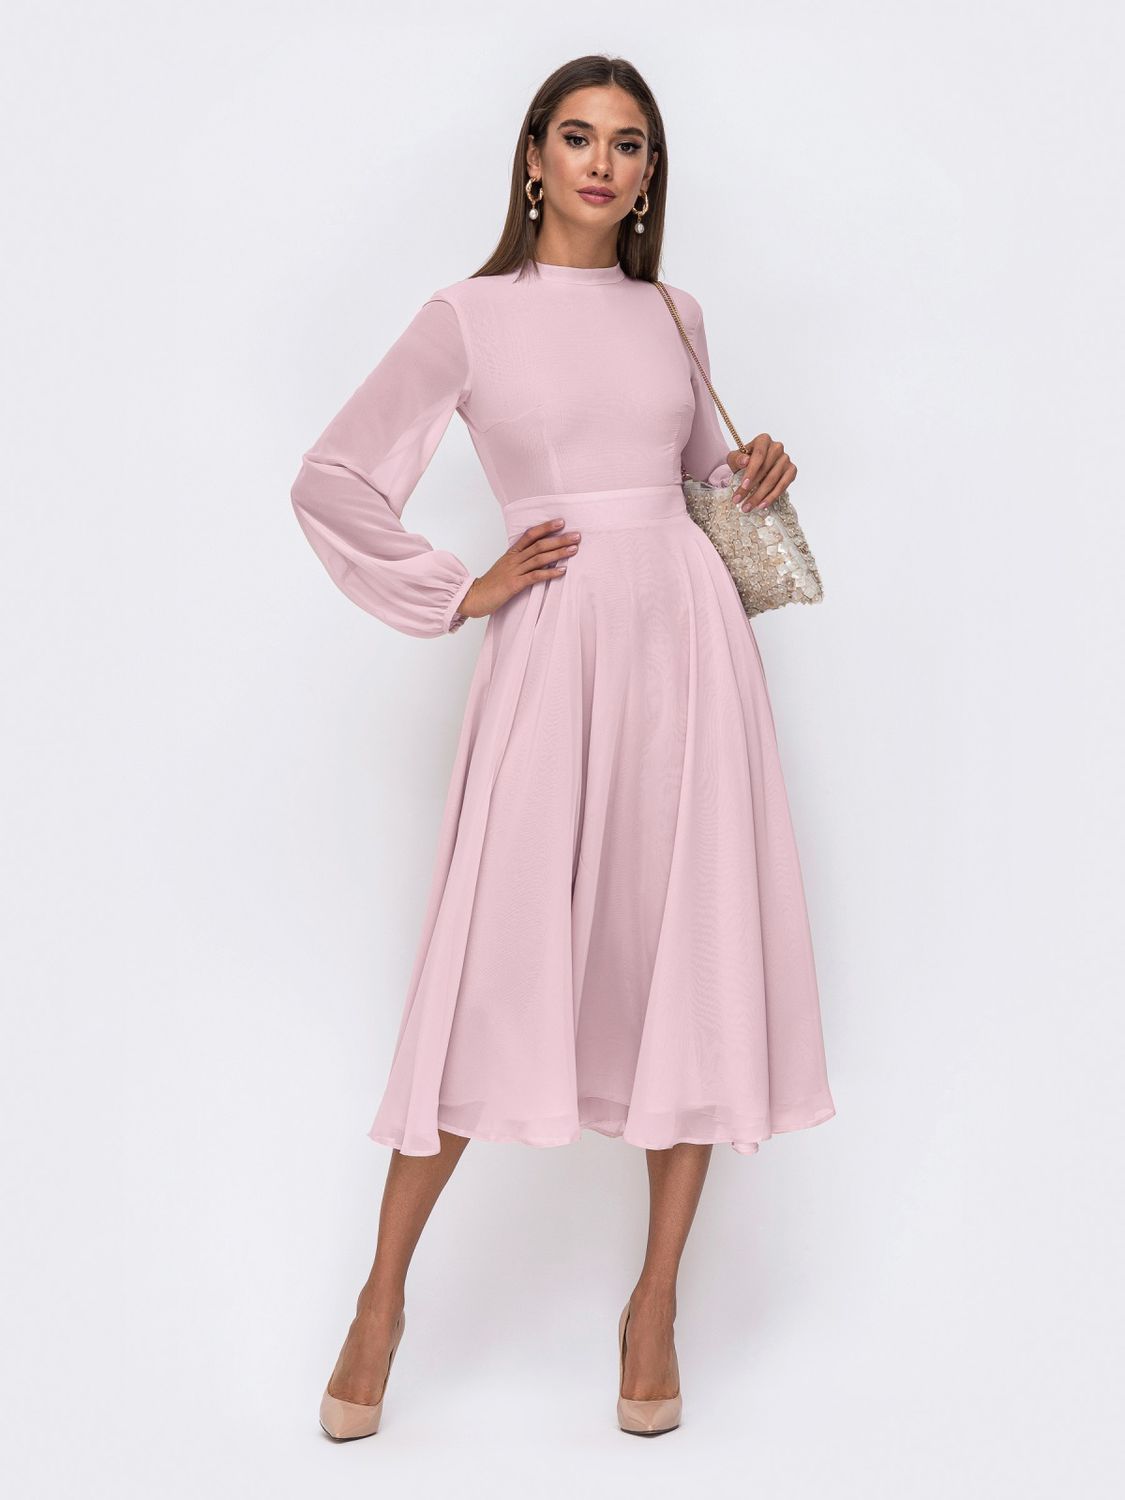 Нарядне плаття міді зі спідницею-сонце рожеве - фото